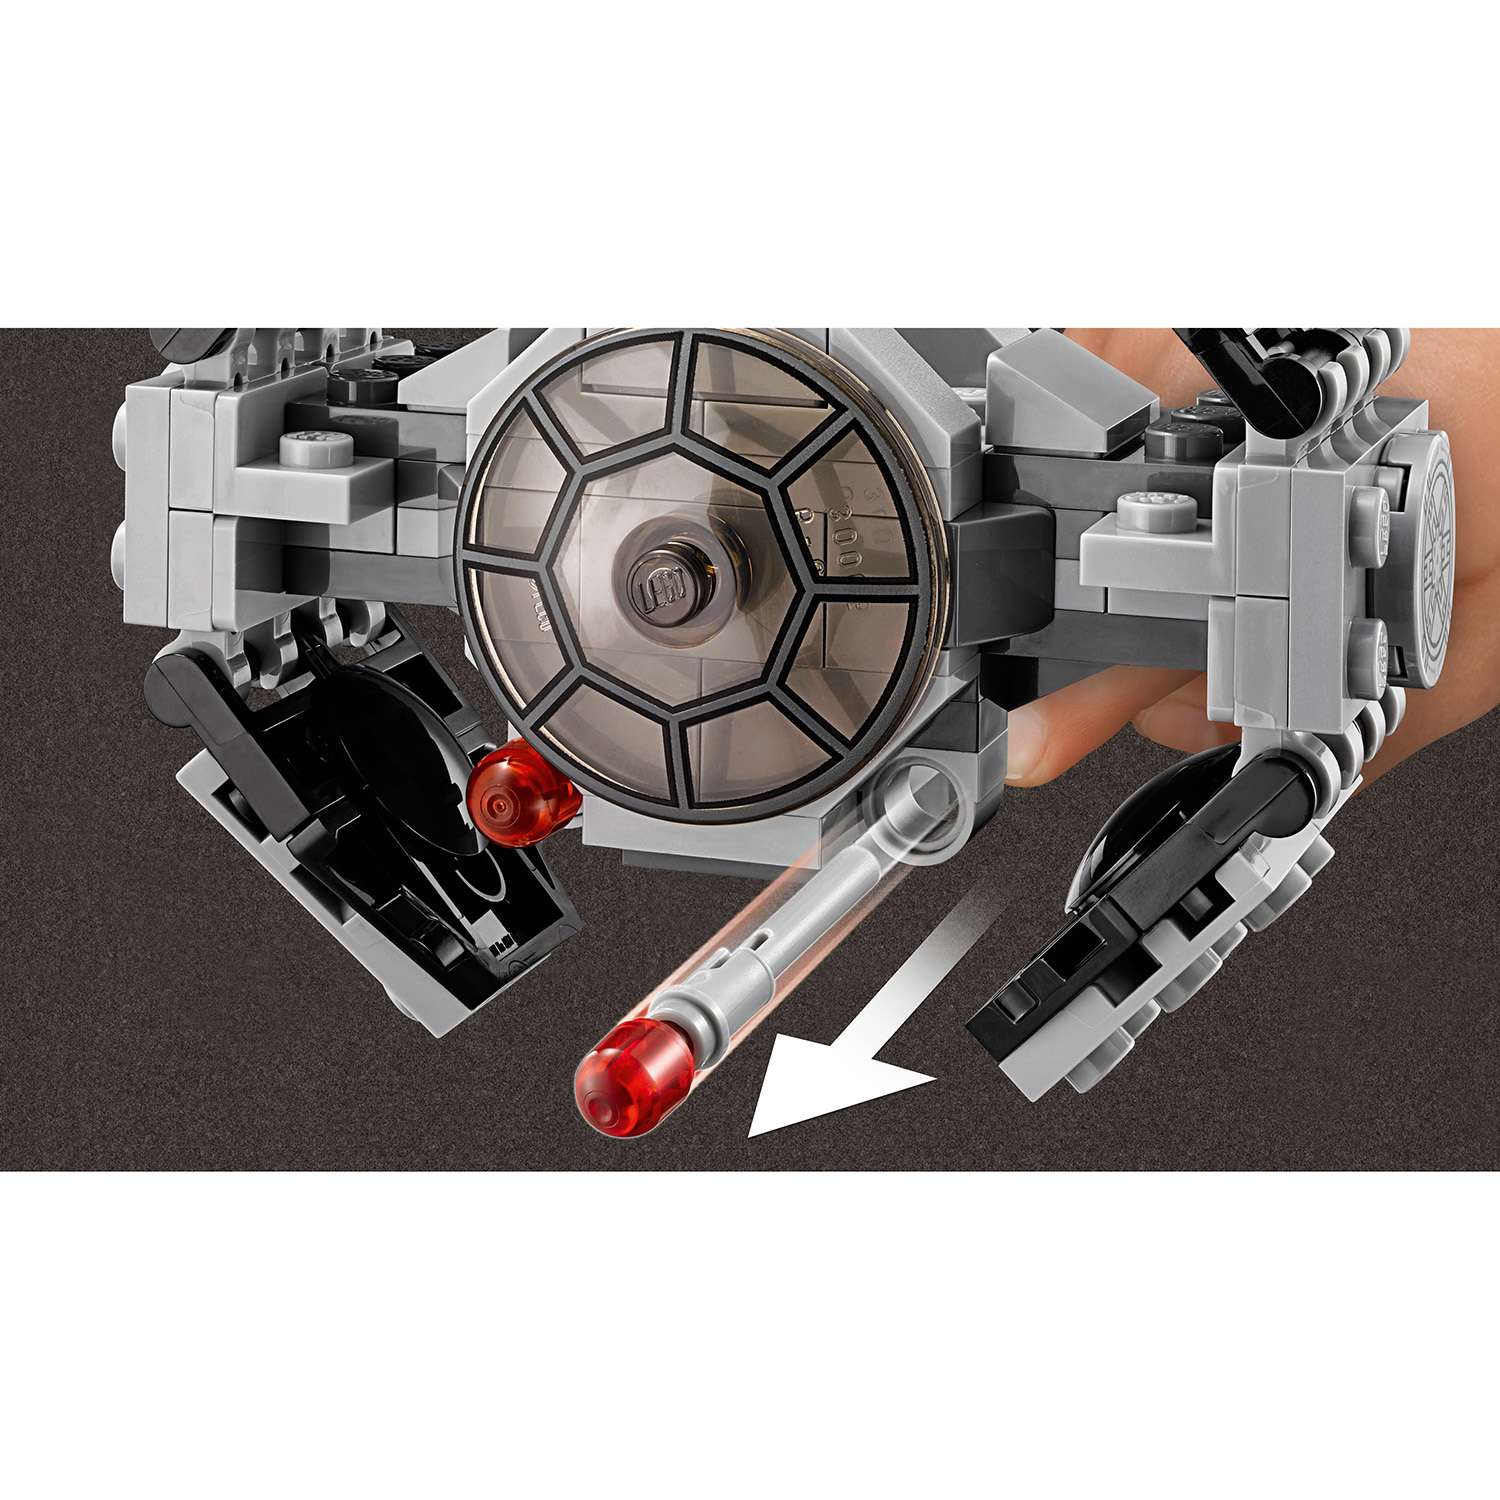 Конструктор LEGO Star Wars TM Усовершенствованный прототип истребителя TIE™ (75128) - фото 6